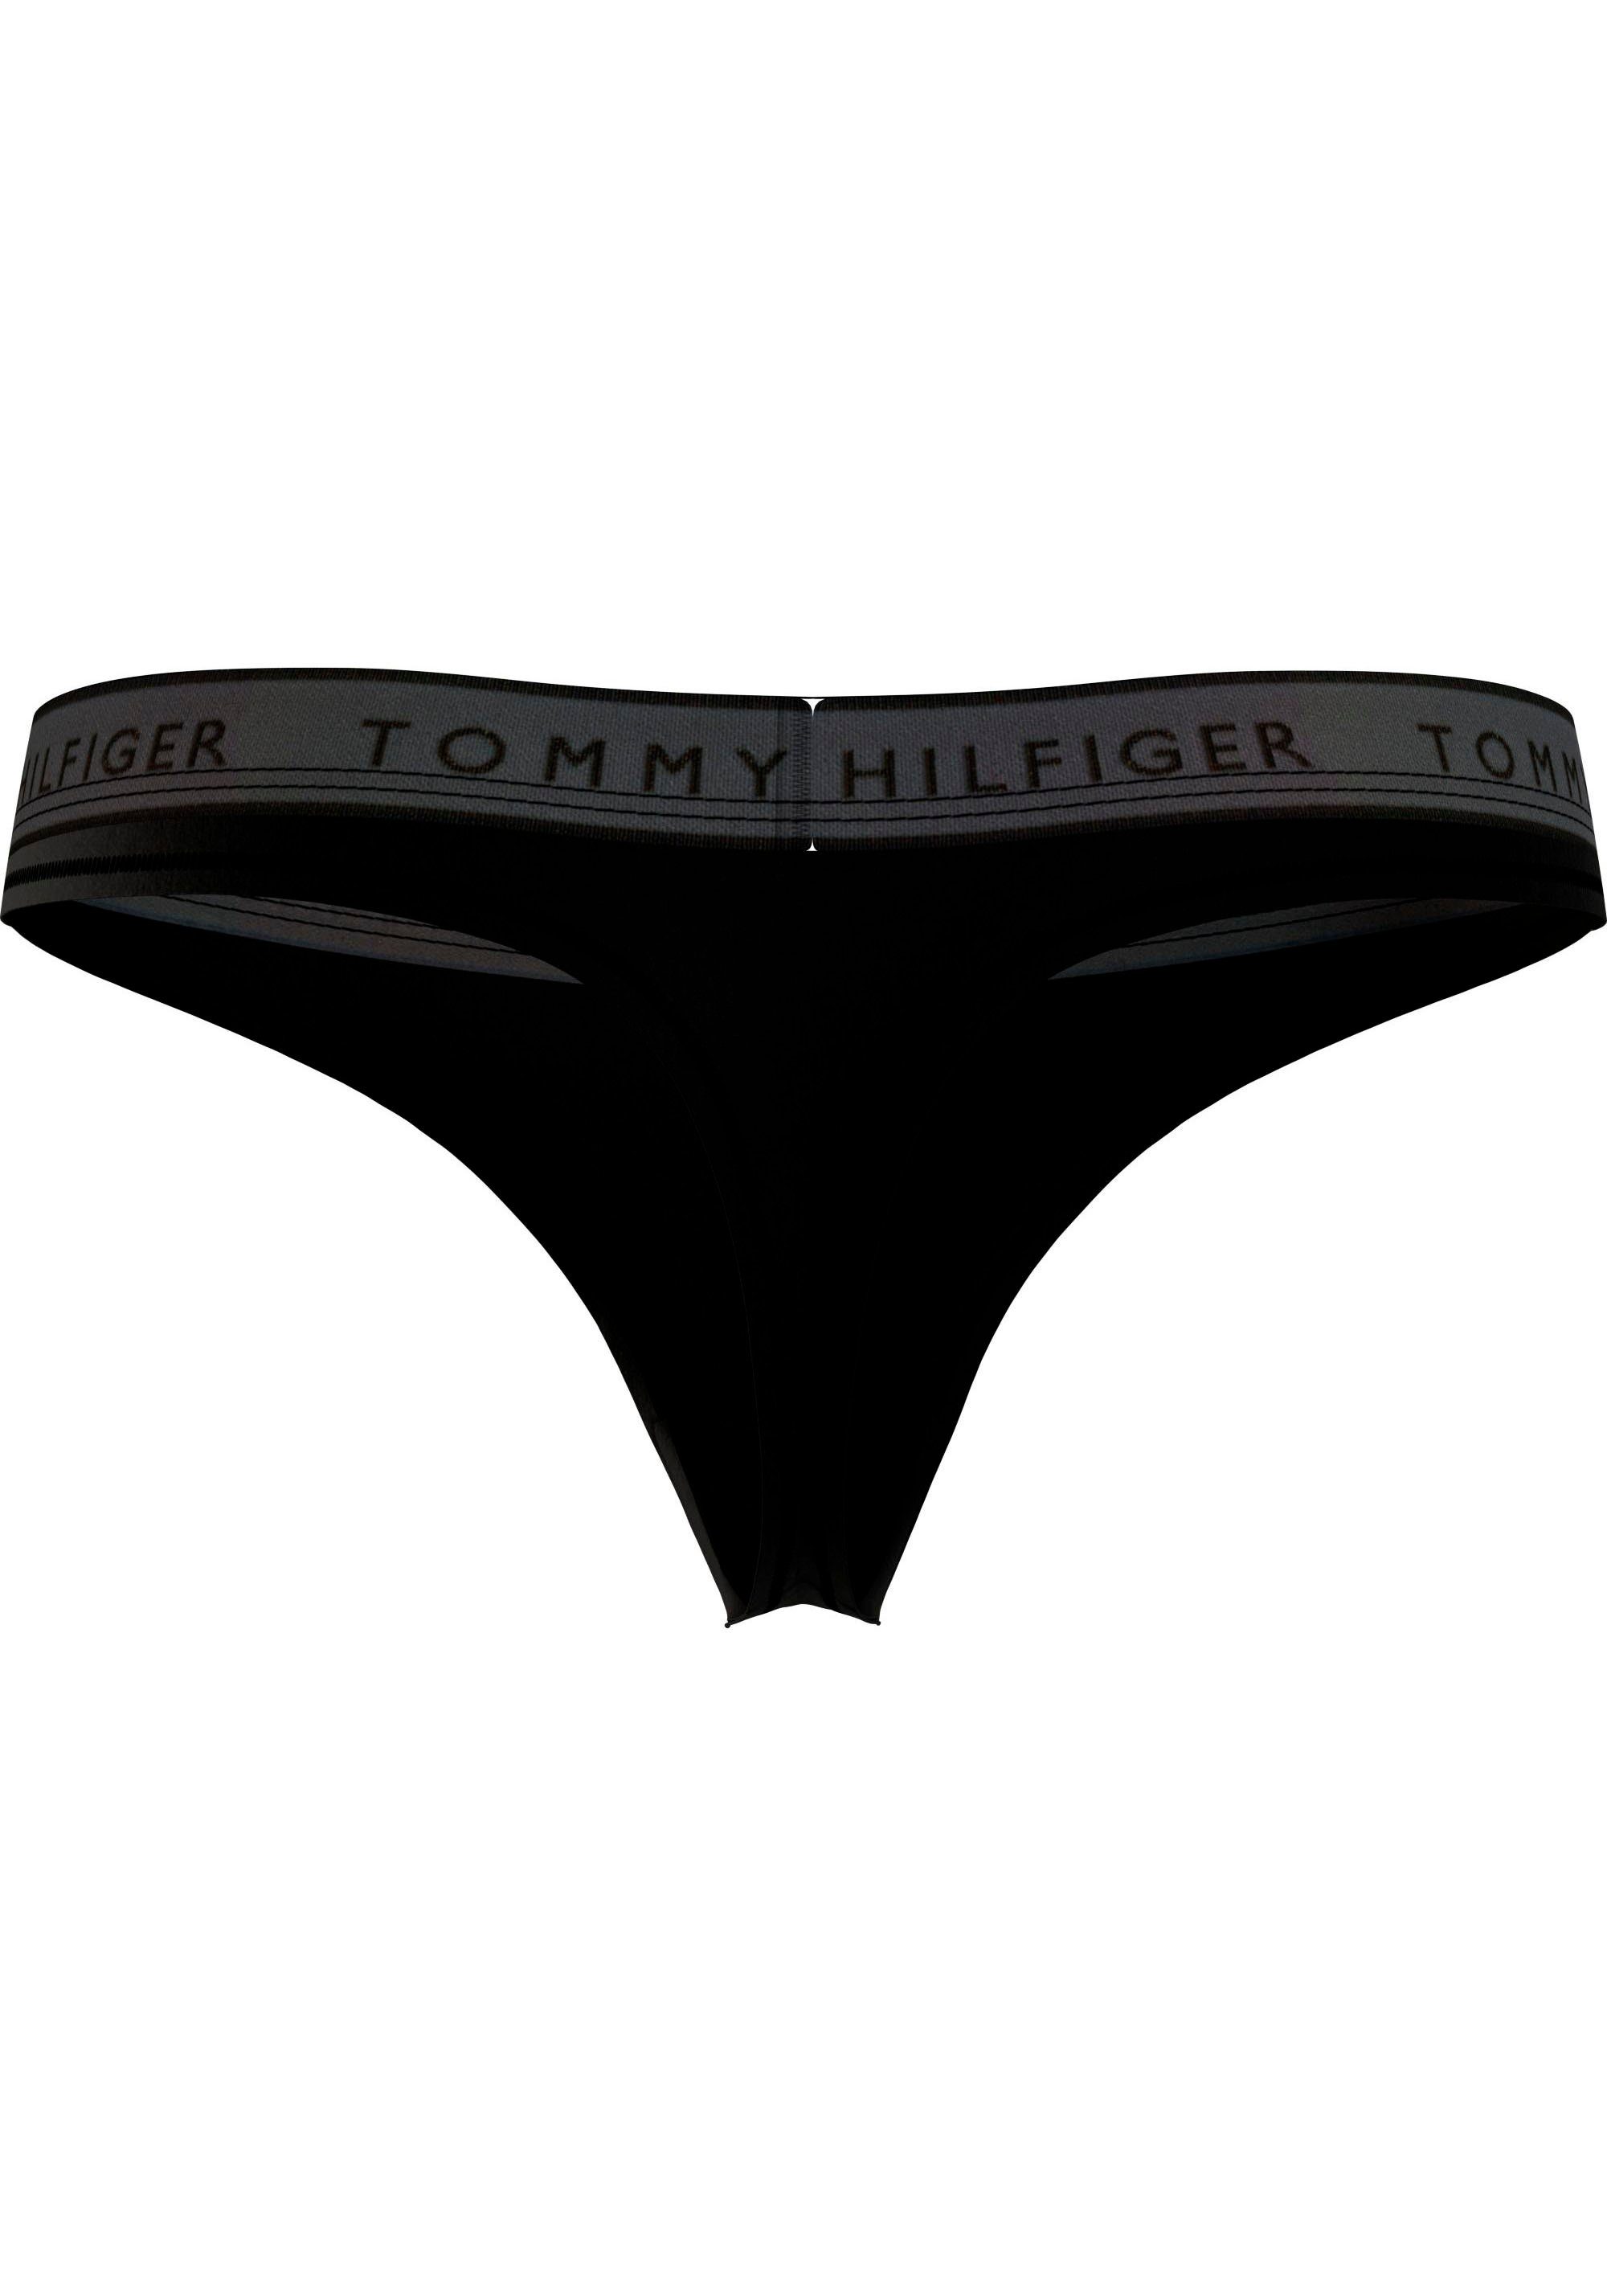 Hilfiger Black (EXT Tommy Tommy Hilfiger THONG SIZES) mit Logobund String Underwear